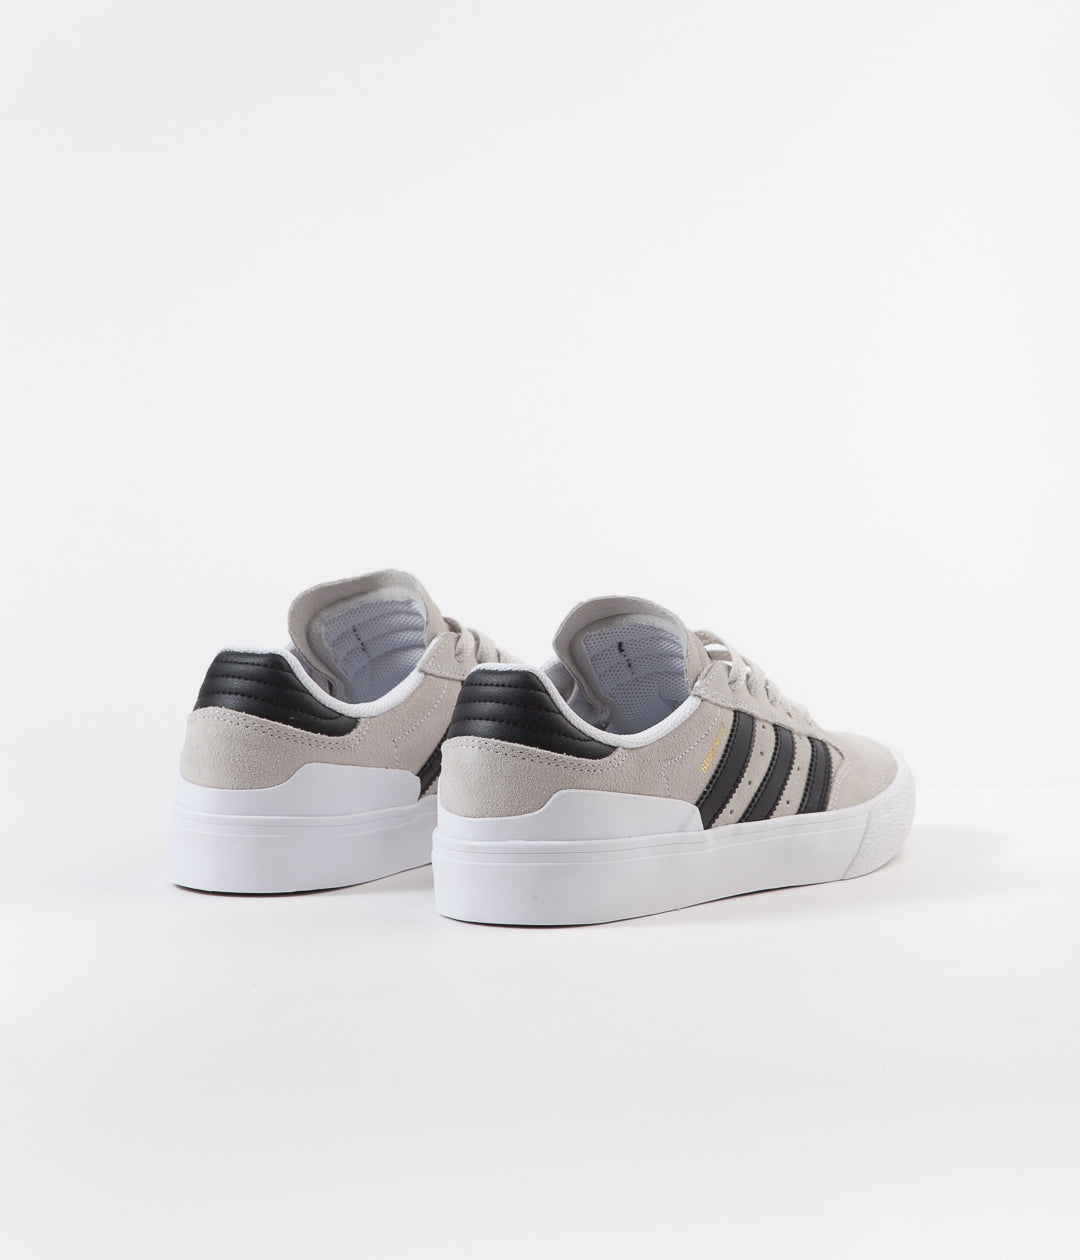 adidas busenitz vulc white & black shoes